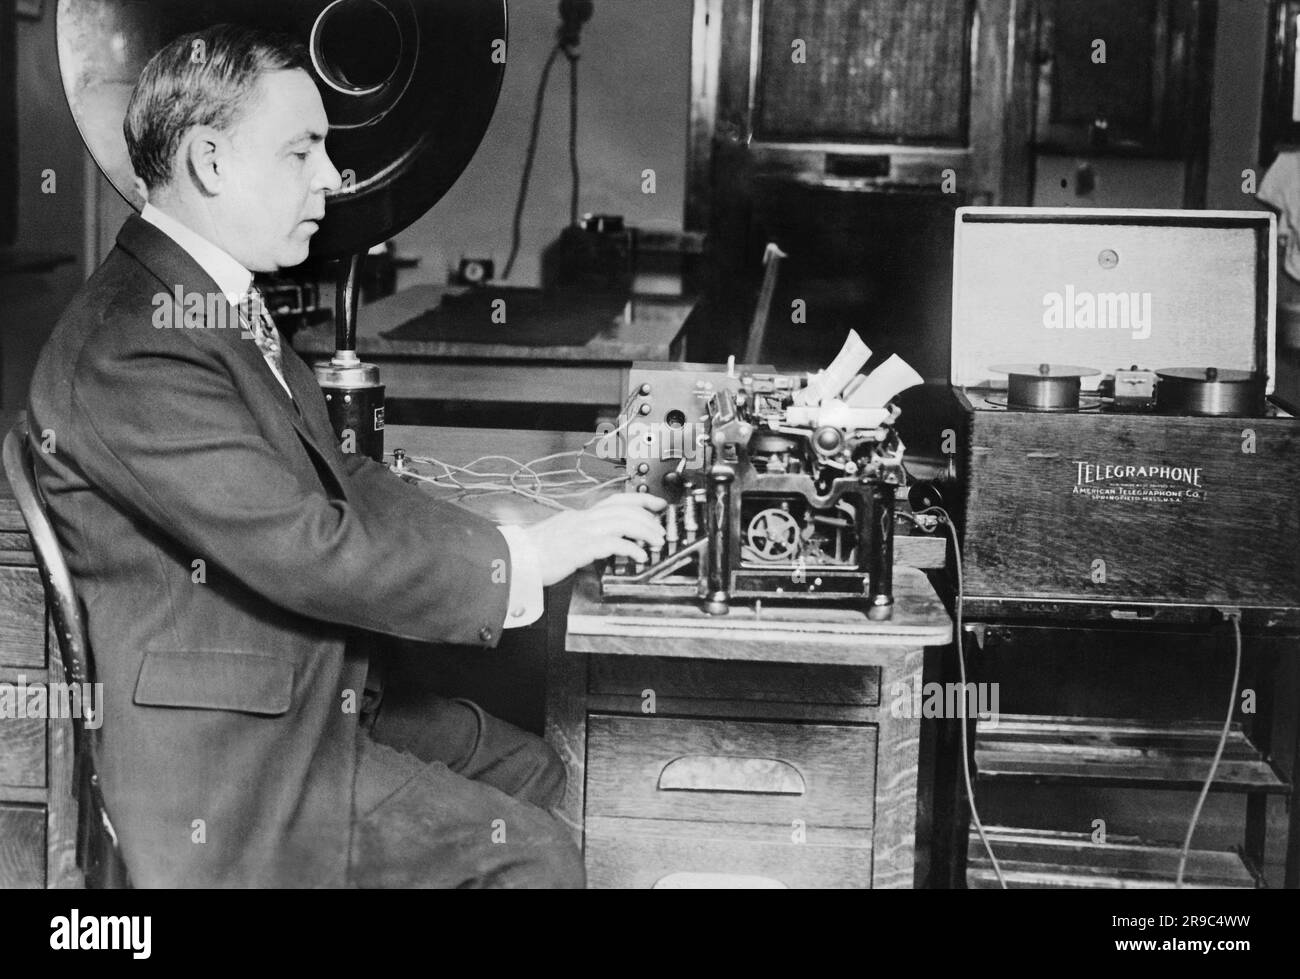 Washington, D.C.: 11 maggio 1922 H.P. O'Reilly sta scrivendo una versione scritta del discorso inaugurale del presidente Harding che è stato registrato su un Telegraphone. Questa è una nuova invenzione che utilizza dieci miglia di filo d'acciaio per registrare il discorso e poi può essere riprodotto attraverso una macchina di riproduzione. Foto Stock